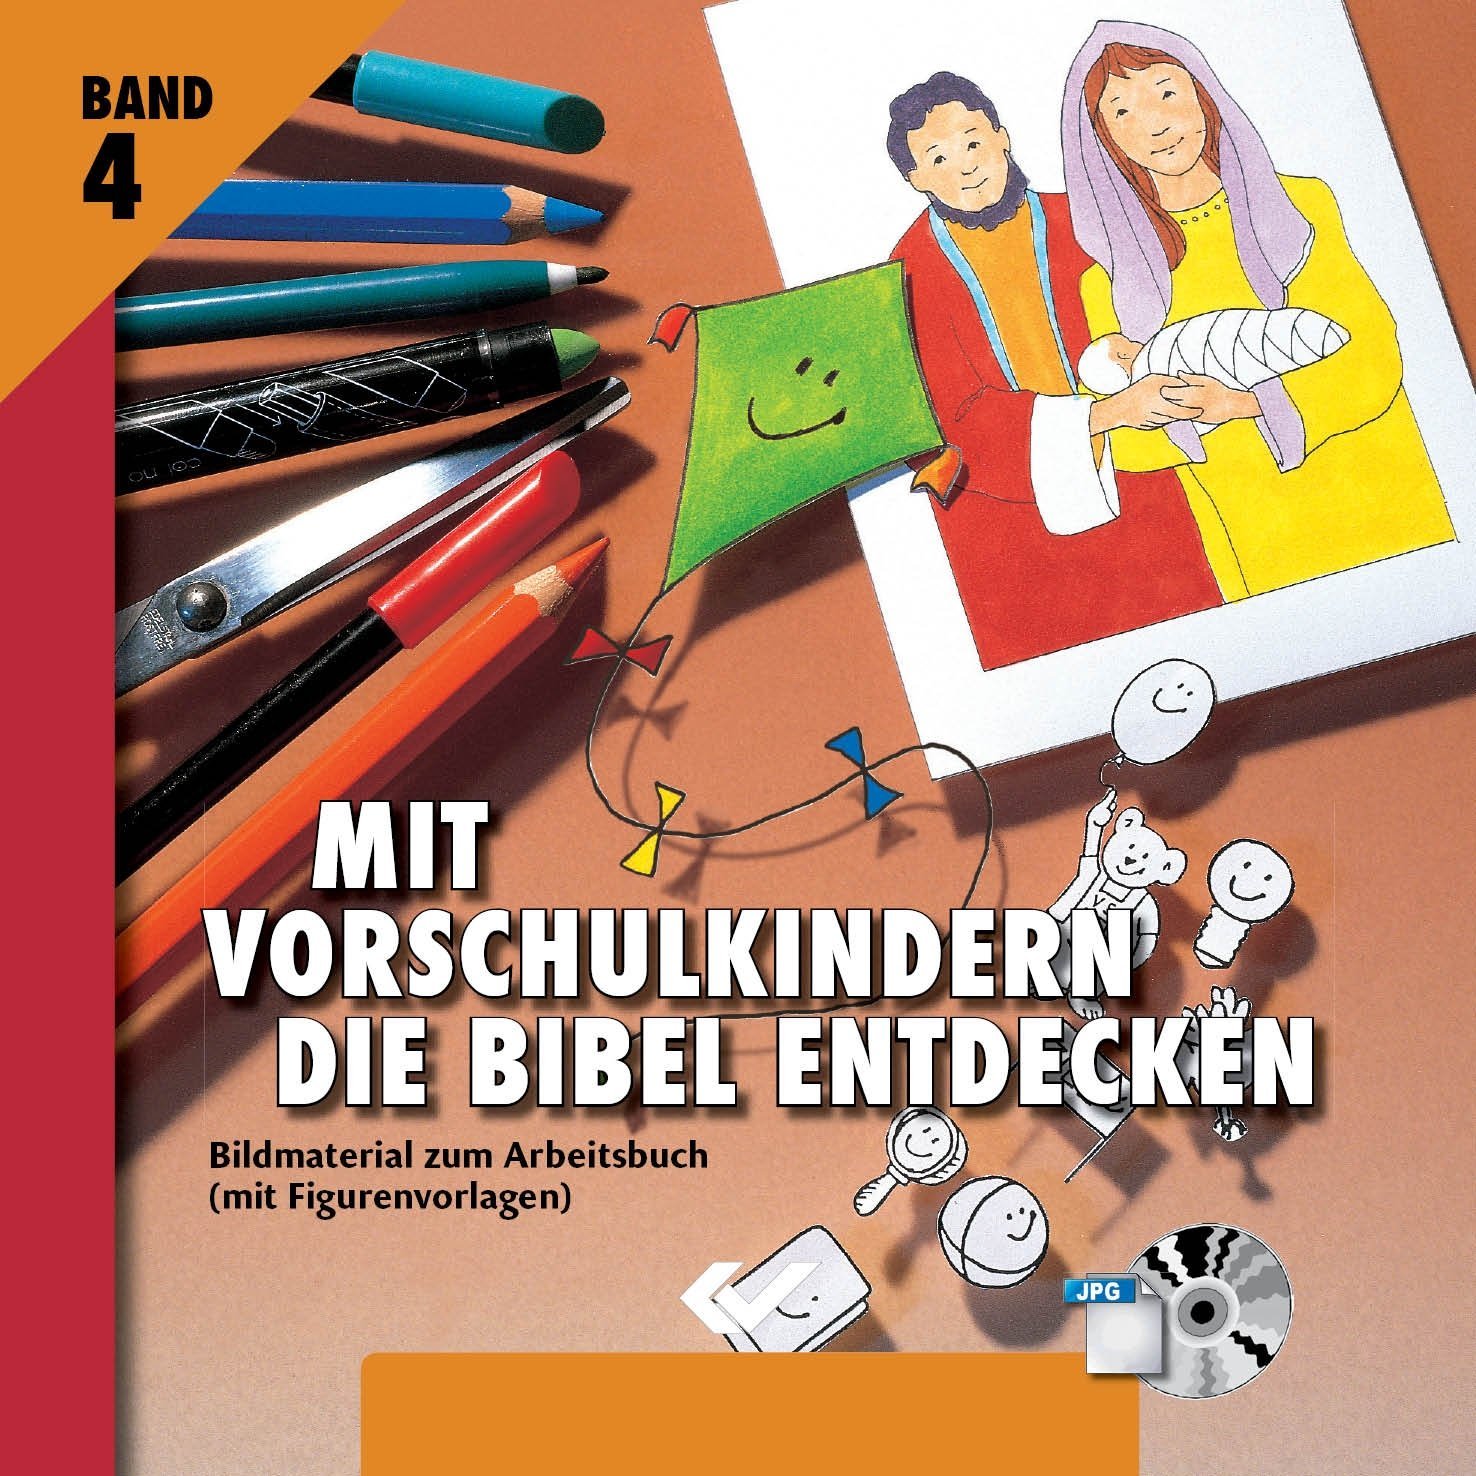 Mit Vorschulkindern die Bibel entdecken - Bildmaterial zum Arbeitsbuch (mit Figurenvorlagen) - Band 4 - CD ROM